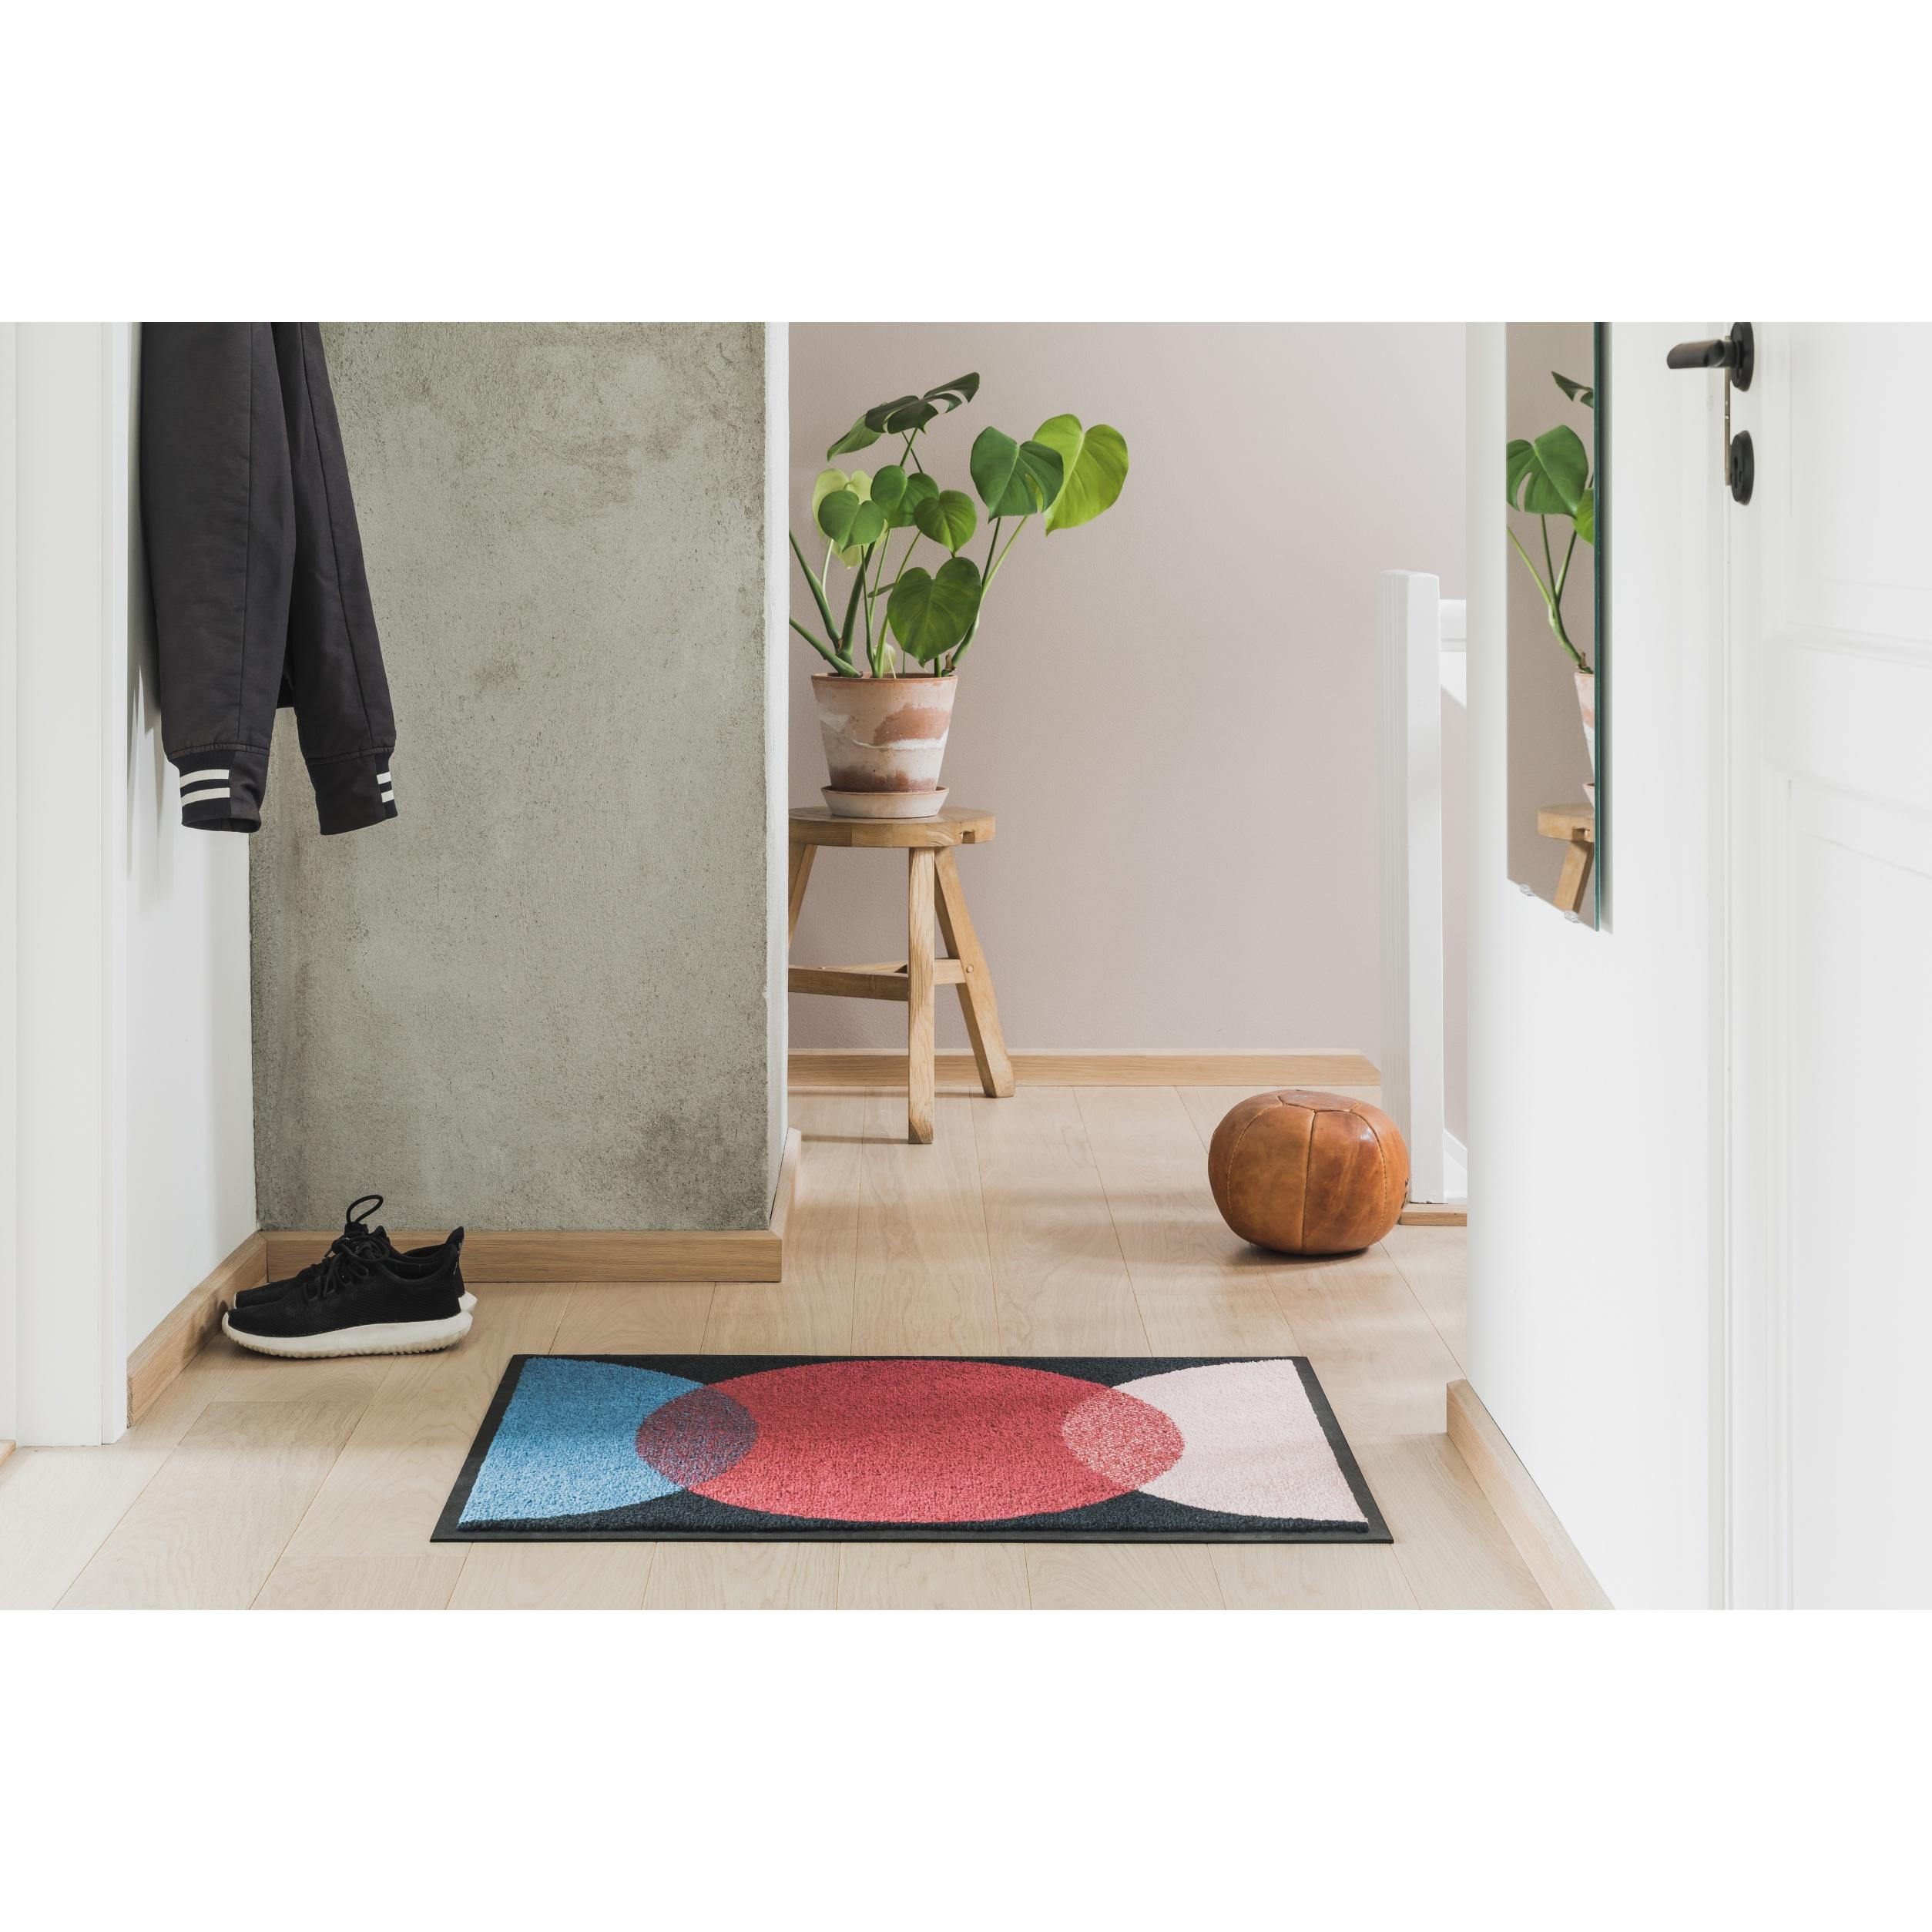 Heymat Doormat spot sort, 60x85 cm